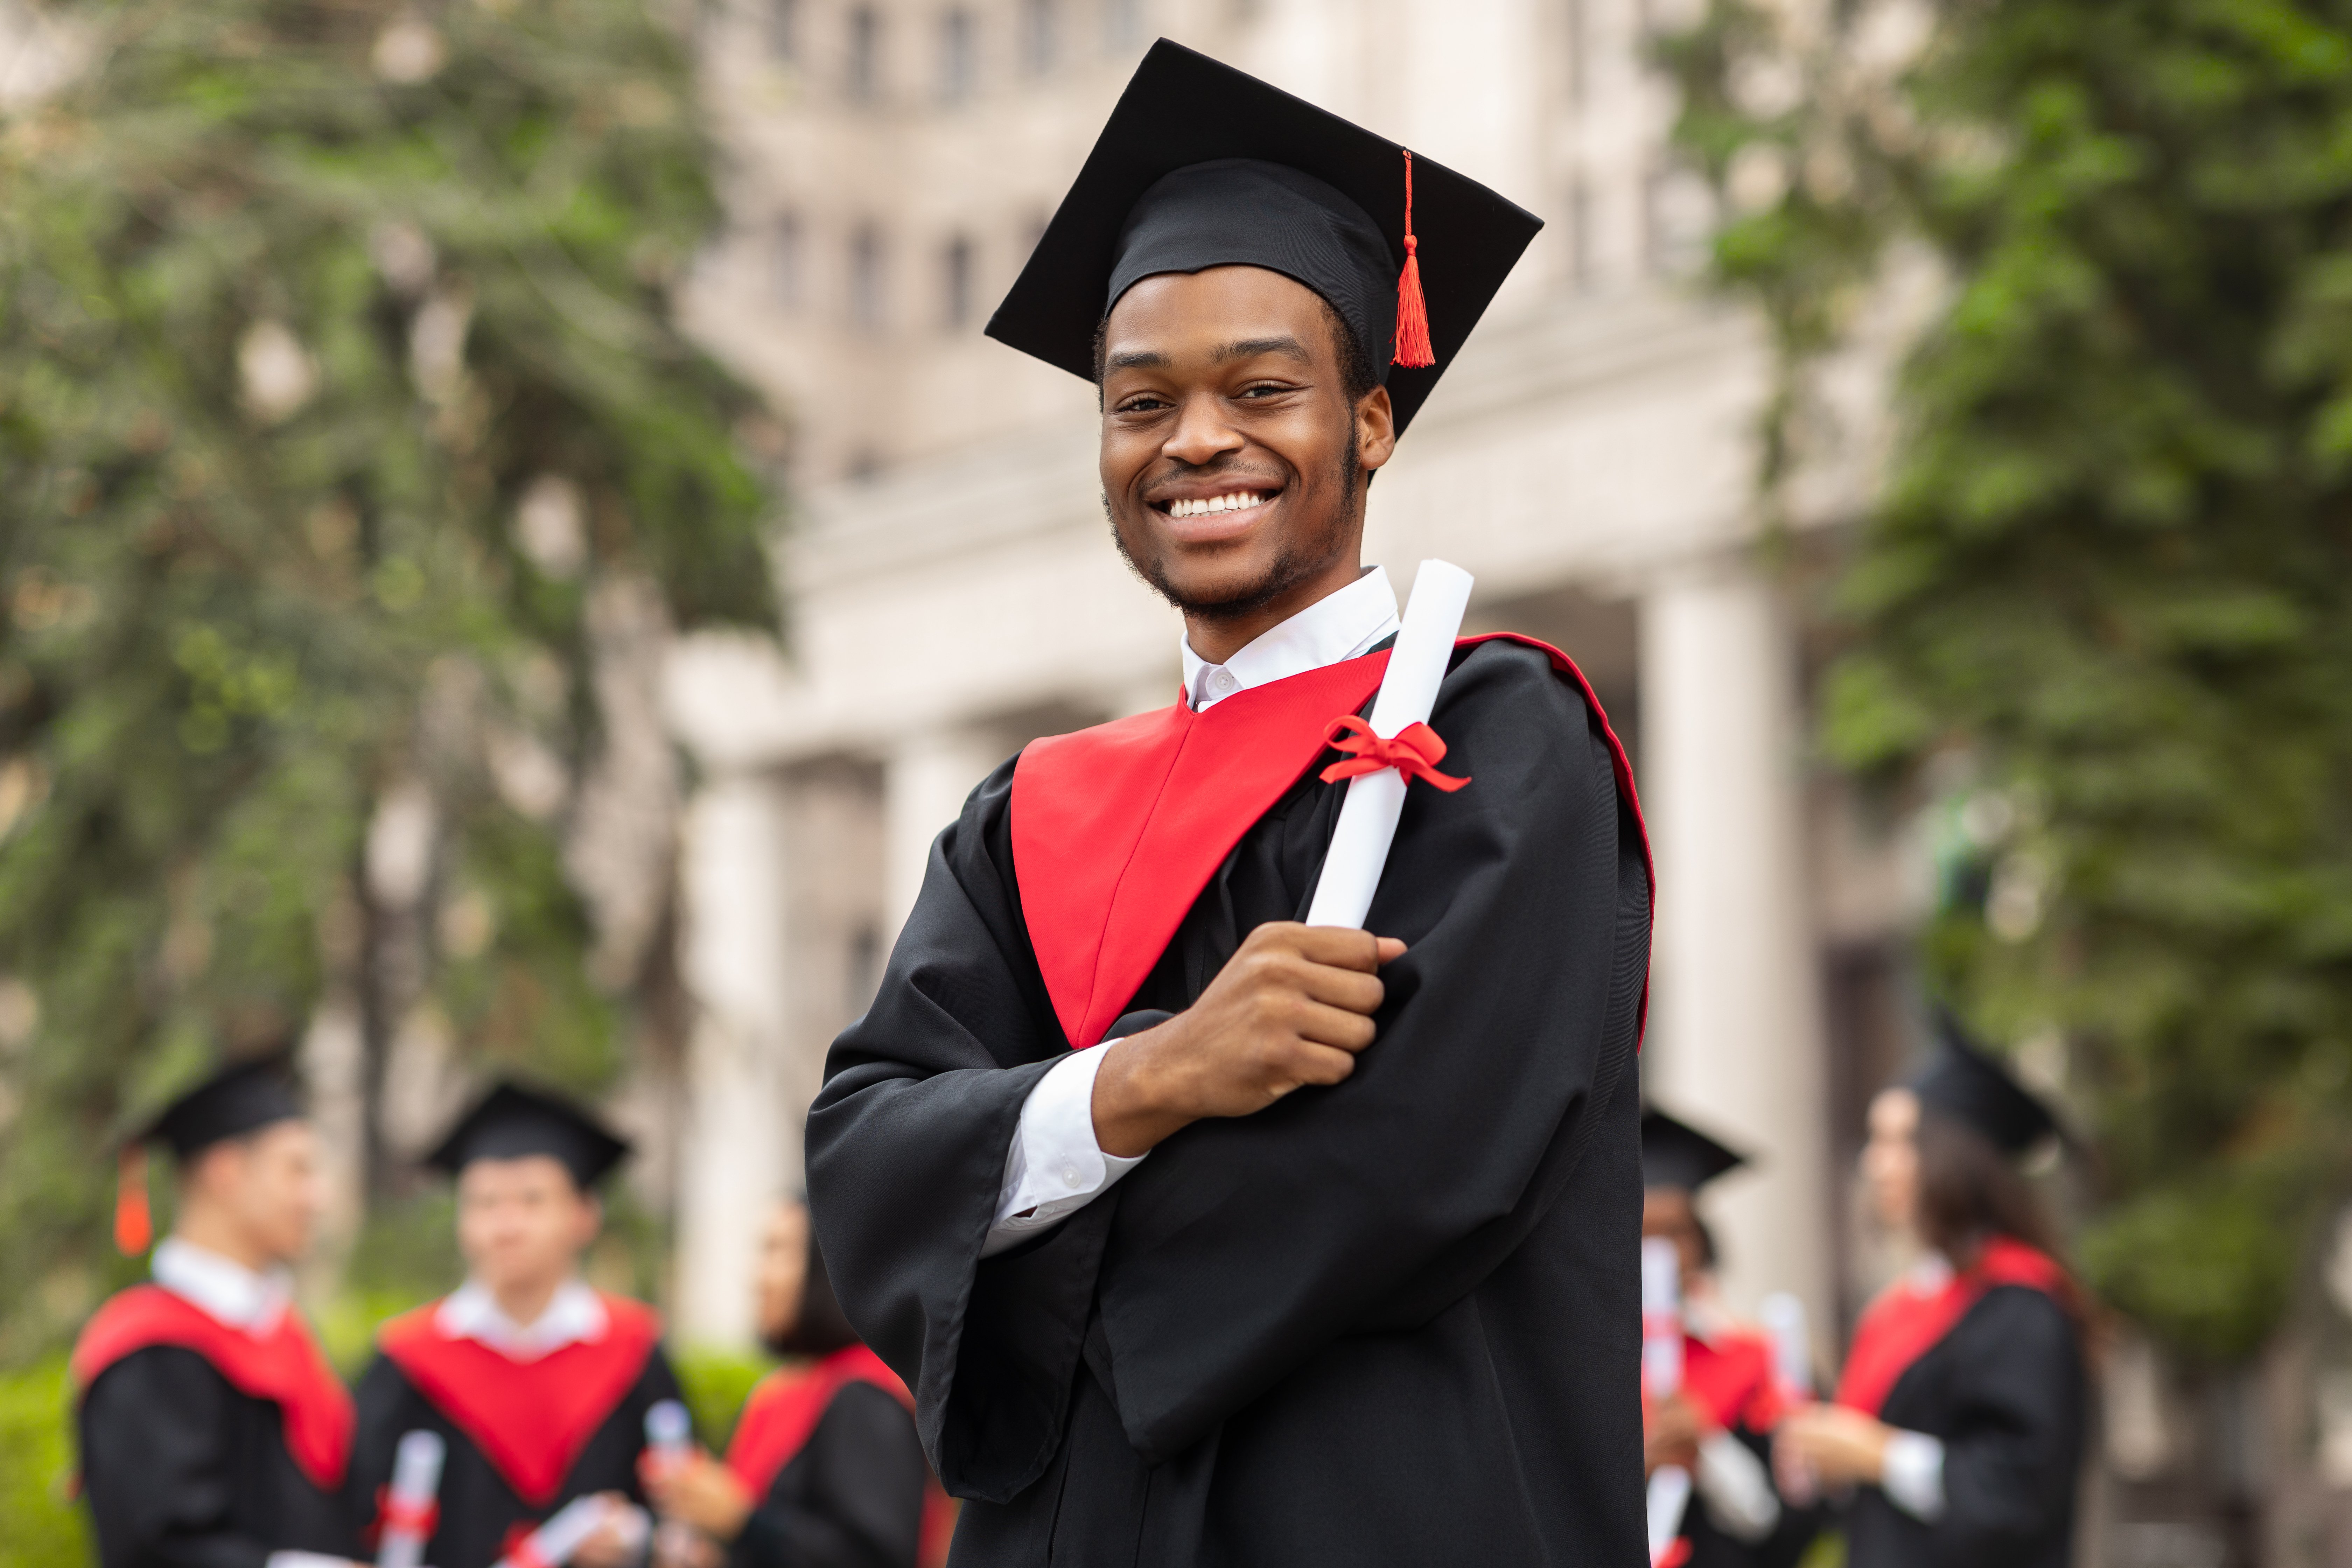 Joven universitario en su graduación. | Foto: Shutterstock